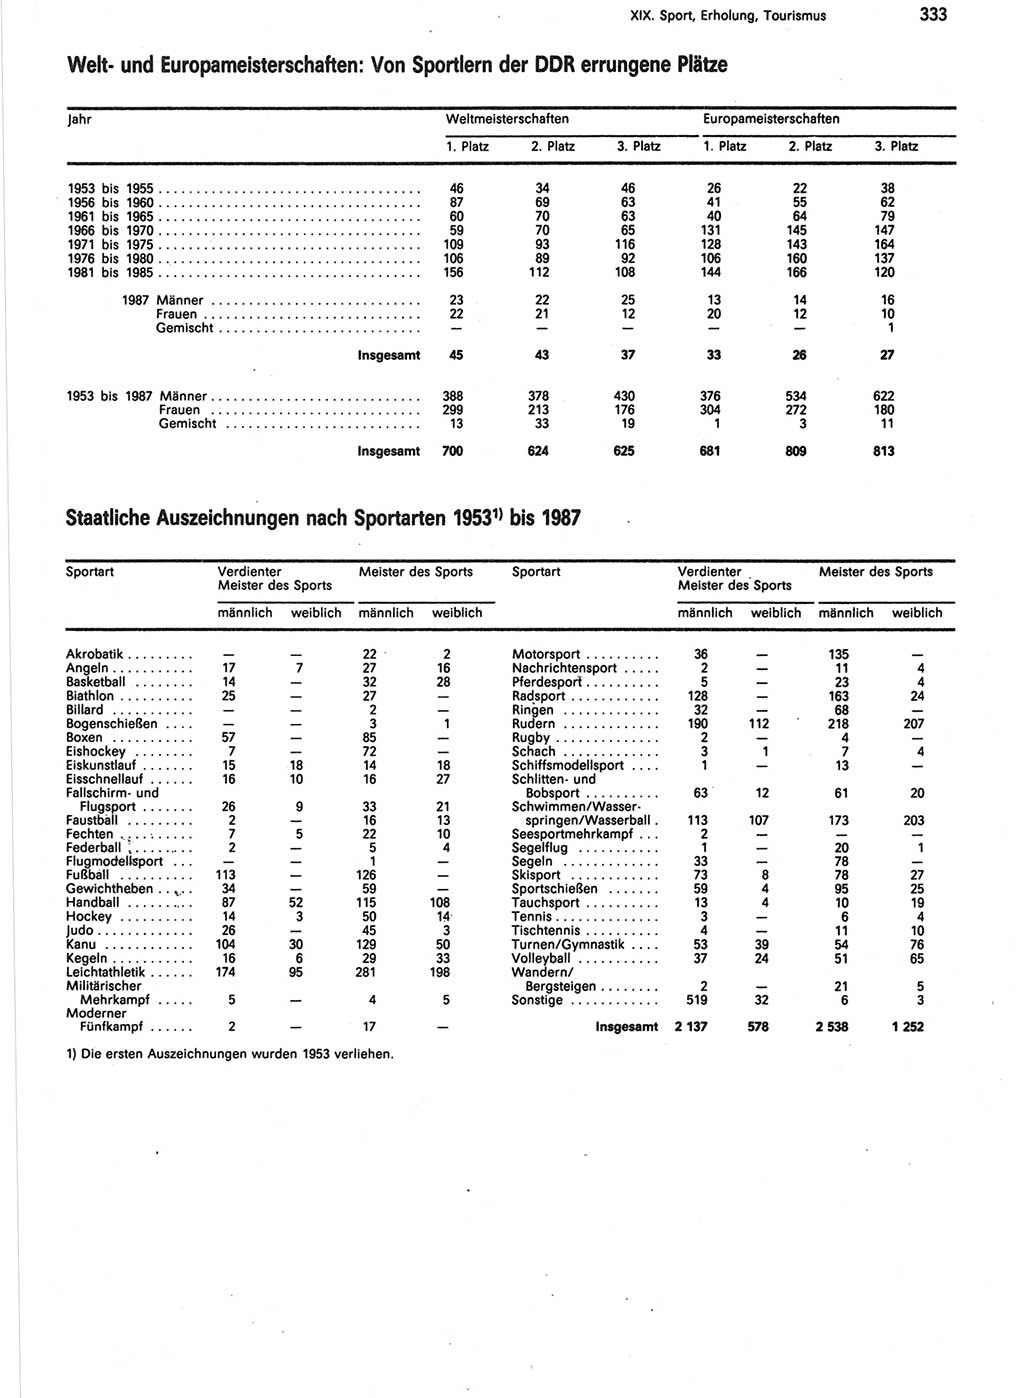 Statistisches Jahrbuch der Deutschen Demokratischen Republik (DDR) 1988, Seite 333 (Stat. Jb. DDR 1988, S. 333)